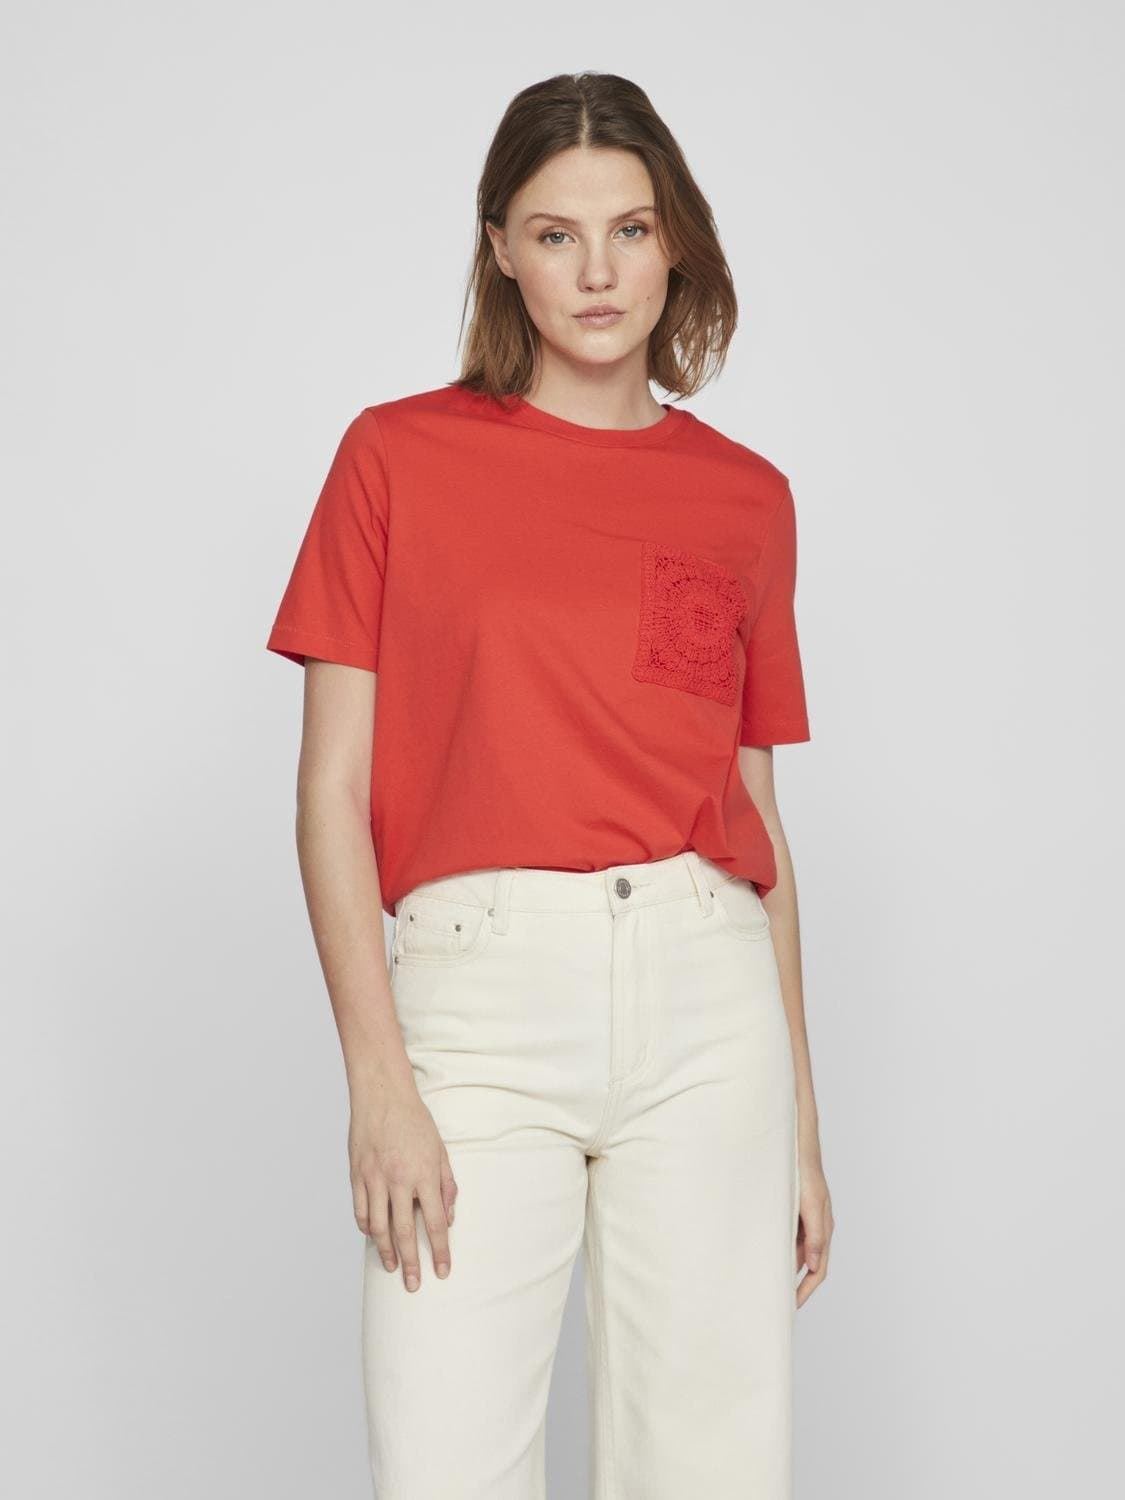 Camiseta crochet visybil rojo - Imagen 1